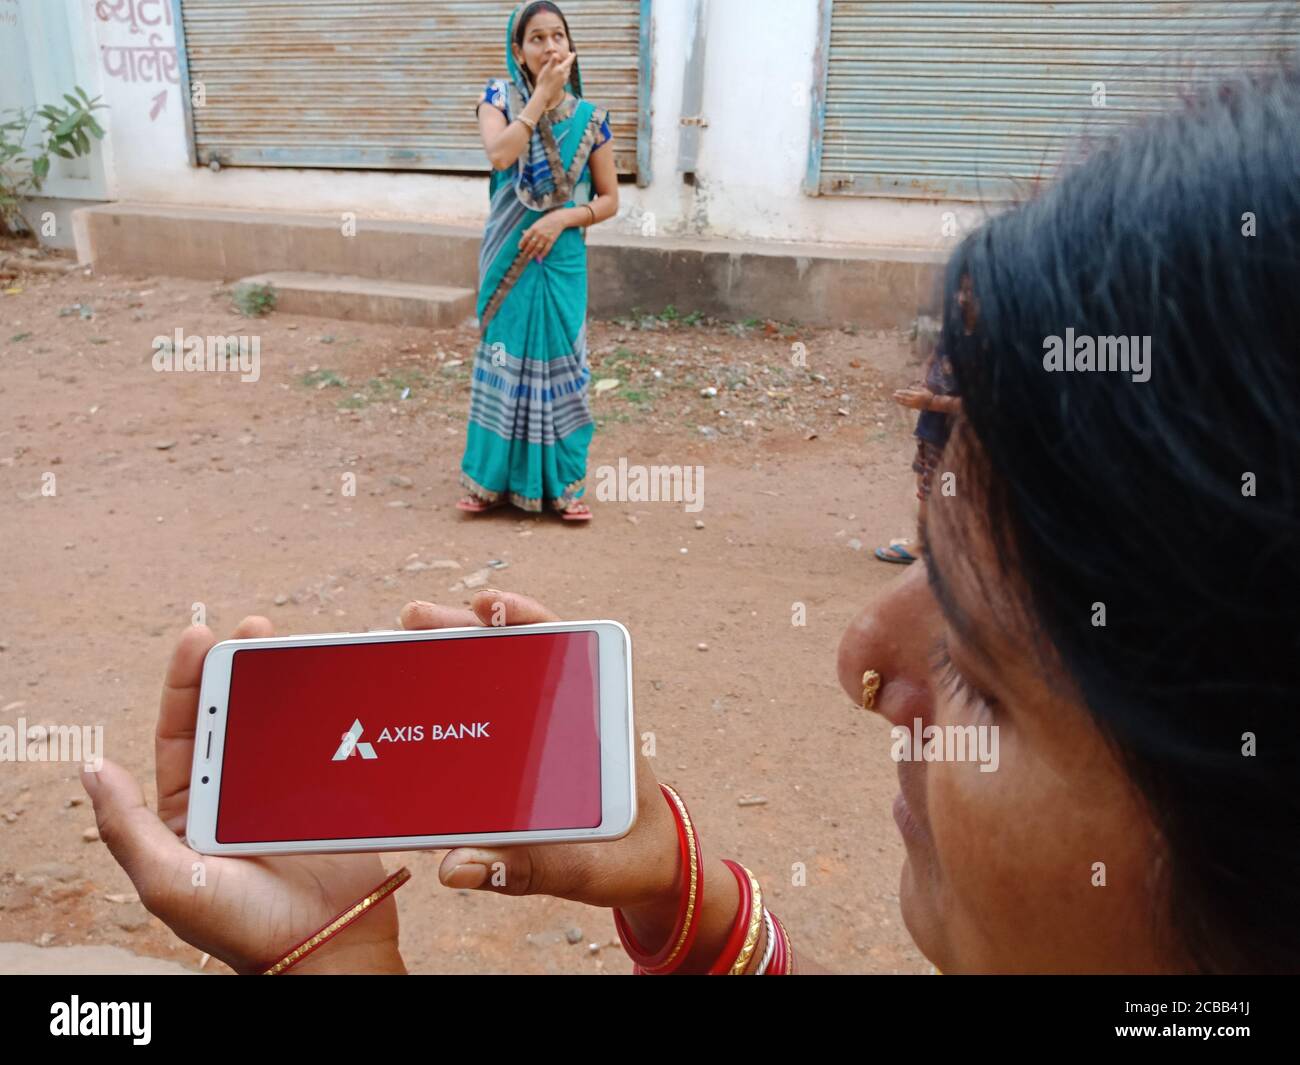 DISTRETTO KATNI, INDIA - 02 GIUGNO 2020: Una donna indiana che tiene lo smartphone con l'esposizione del logo della società di banca di asse sullo schermo, e moderno di banca Foto Stock